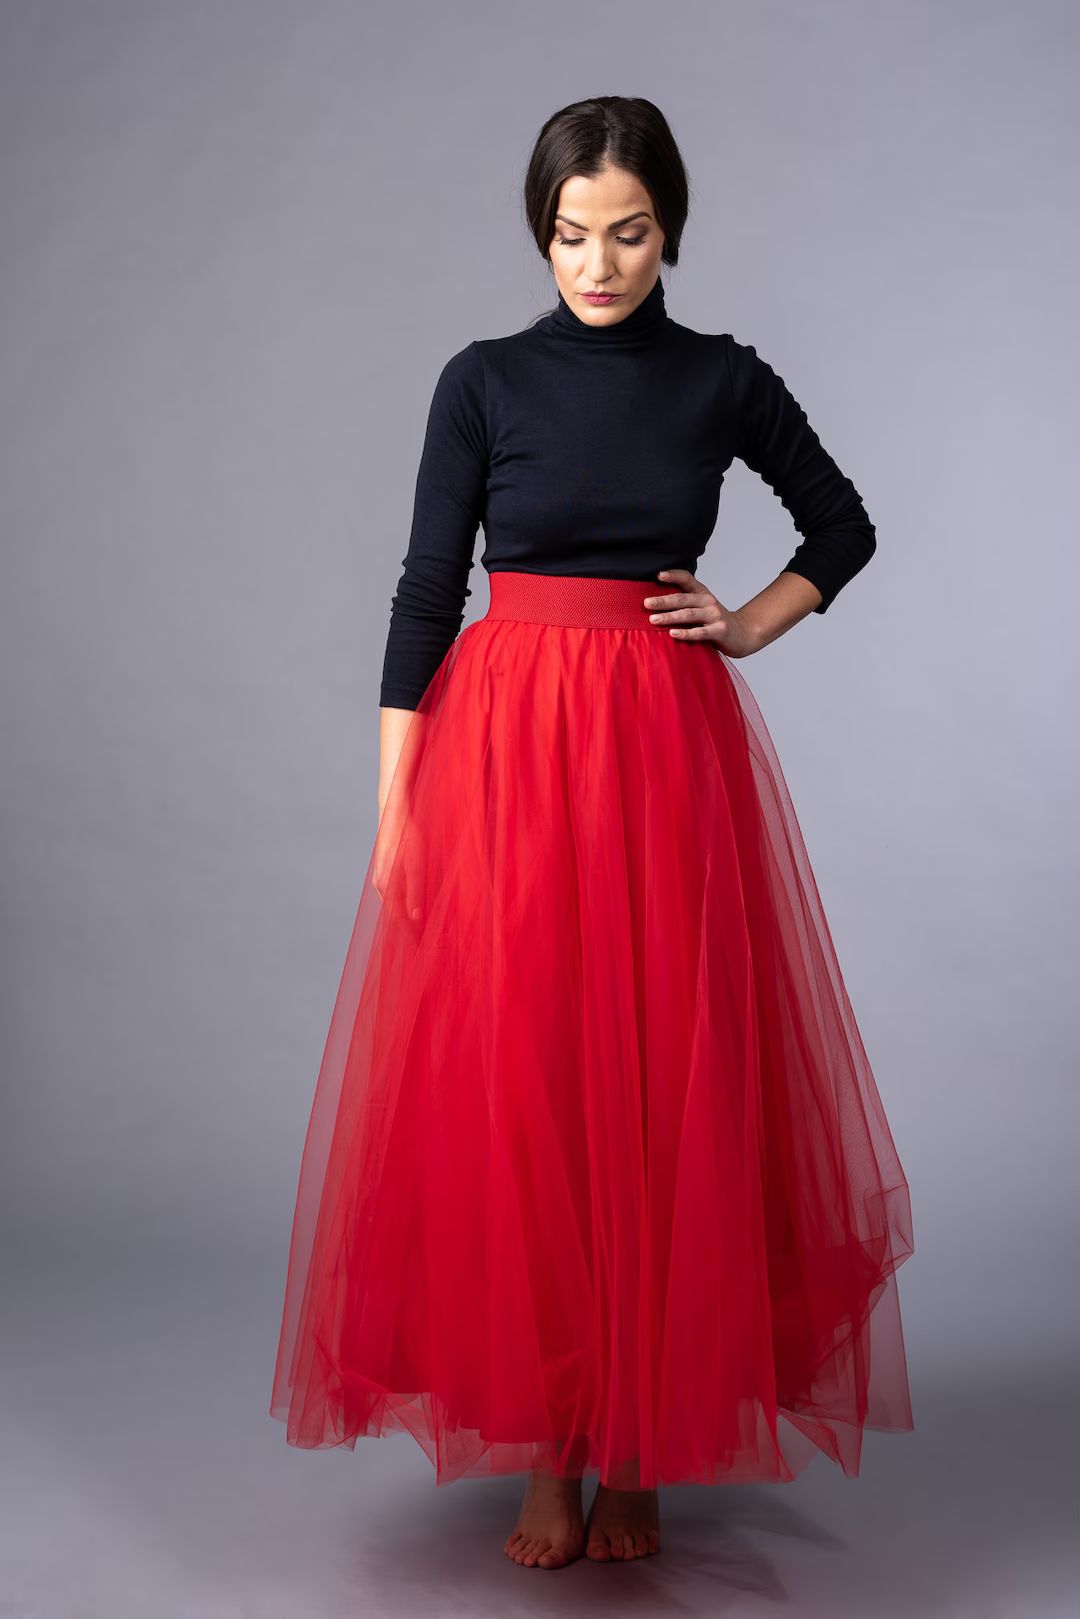 Long Red Tulle Skirt / Party Red Skirt / Wedding Red Skirt / - Etsy | Etsy (US)